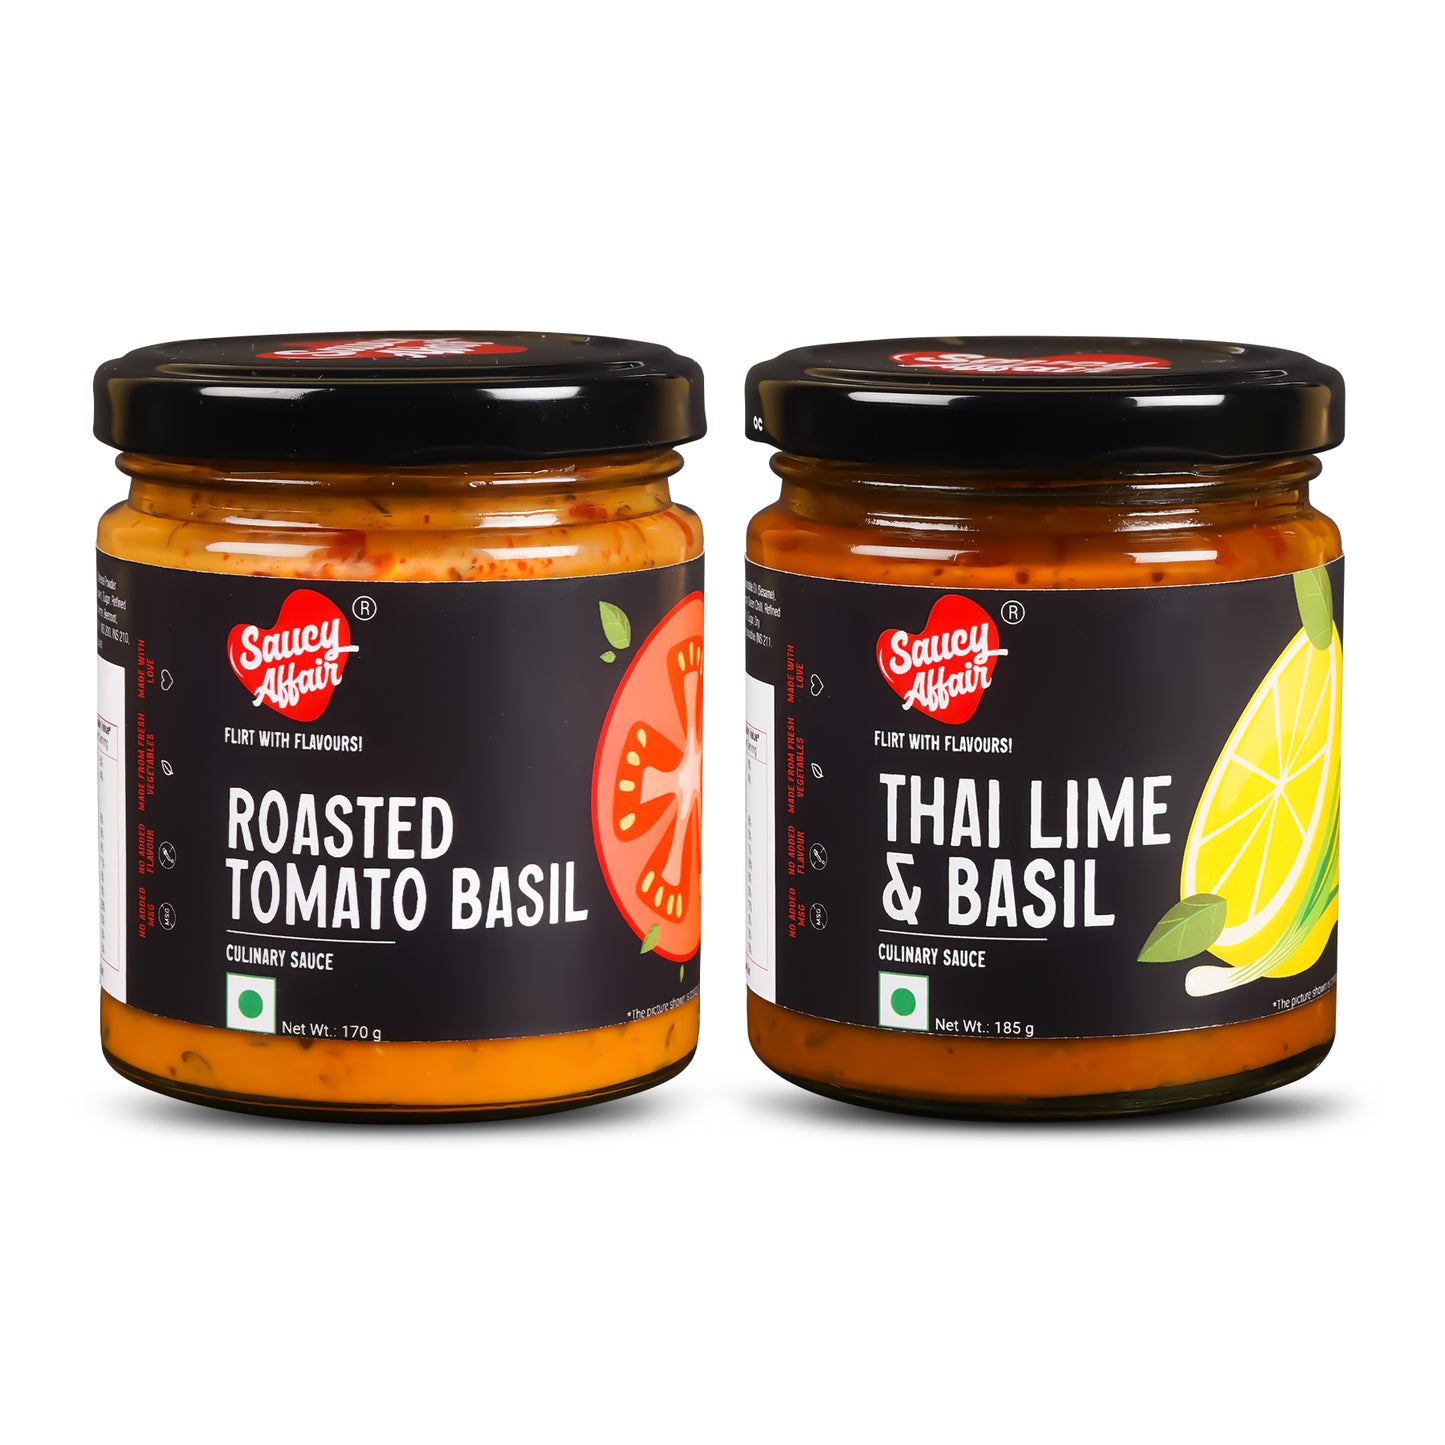 Roasted Tomato Basil - 170g +  Thai Lime & Basil - 185g  Combo (Pack of 2)